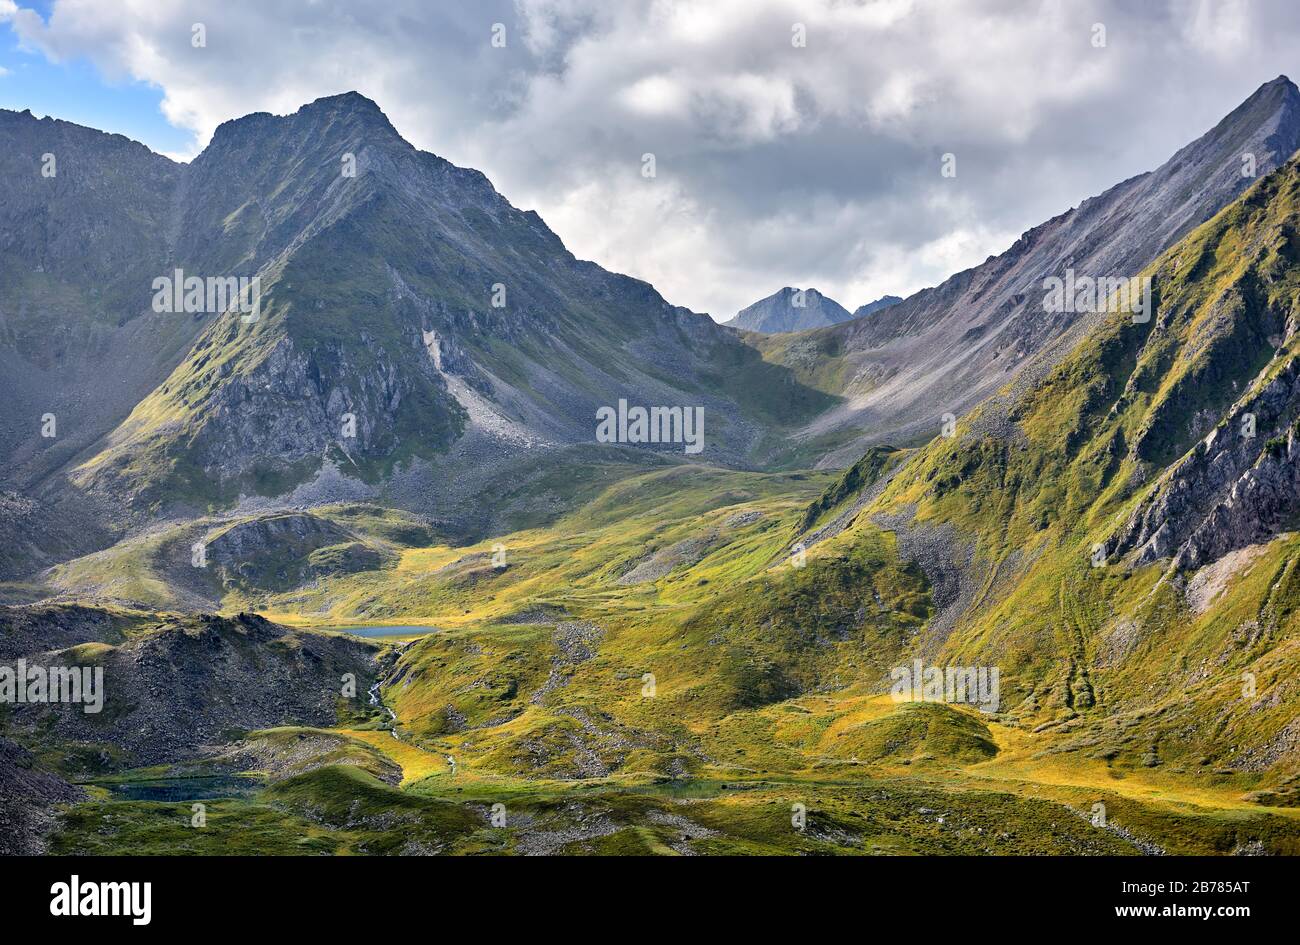 Tundra alpina y lagos a la cabeza del río Siberiano. La parte superior del valle de montaña es de origen glacial. La luz del sol ilumina las zonas seleccionadas de Foto de stock